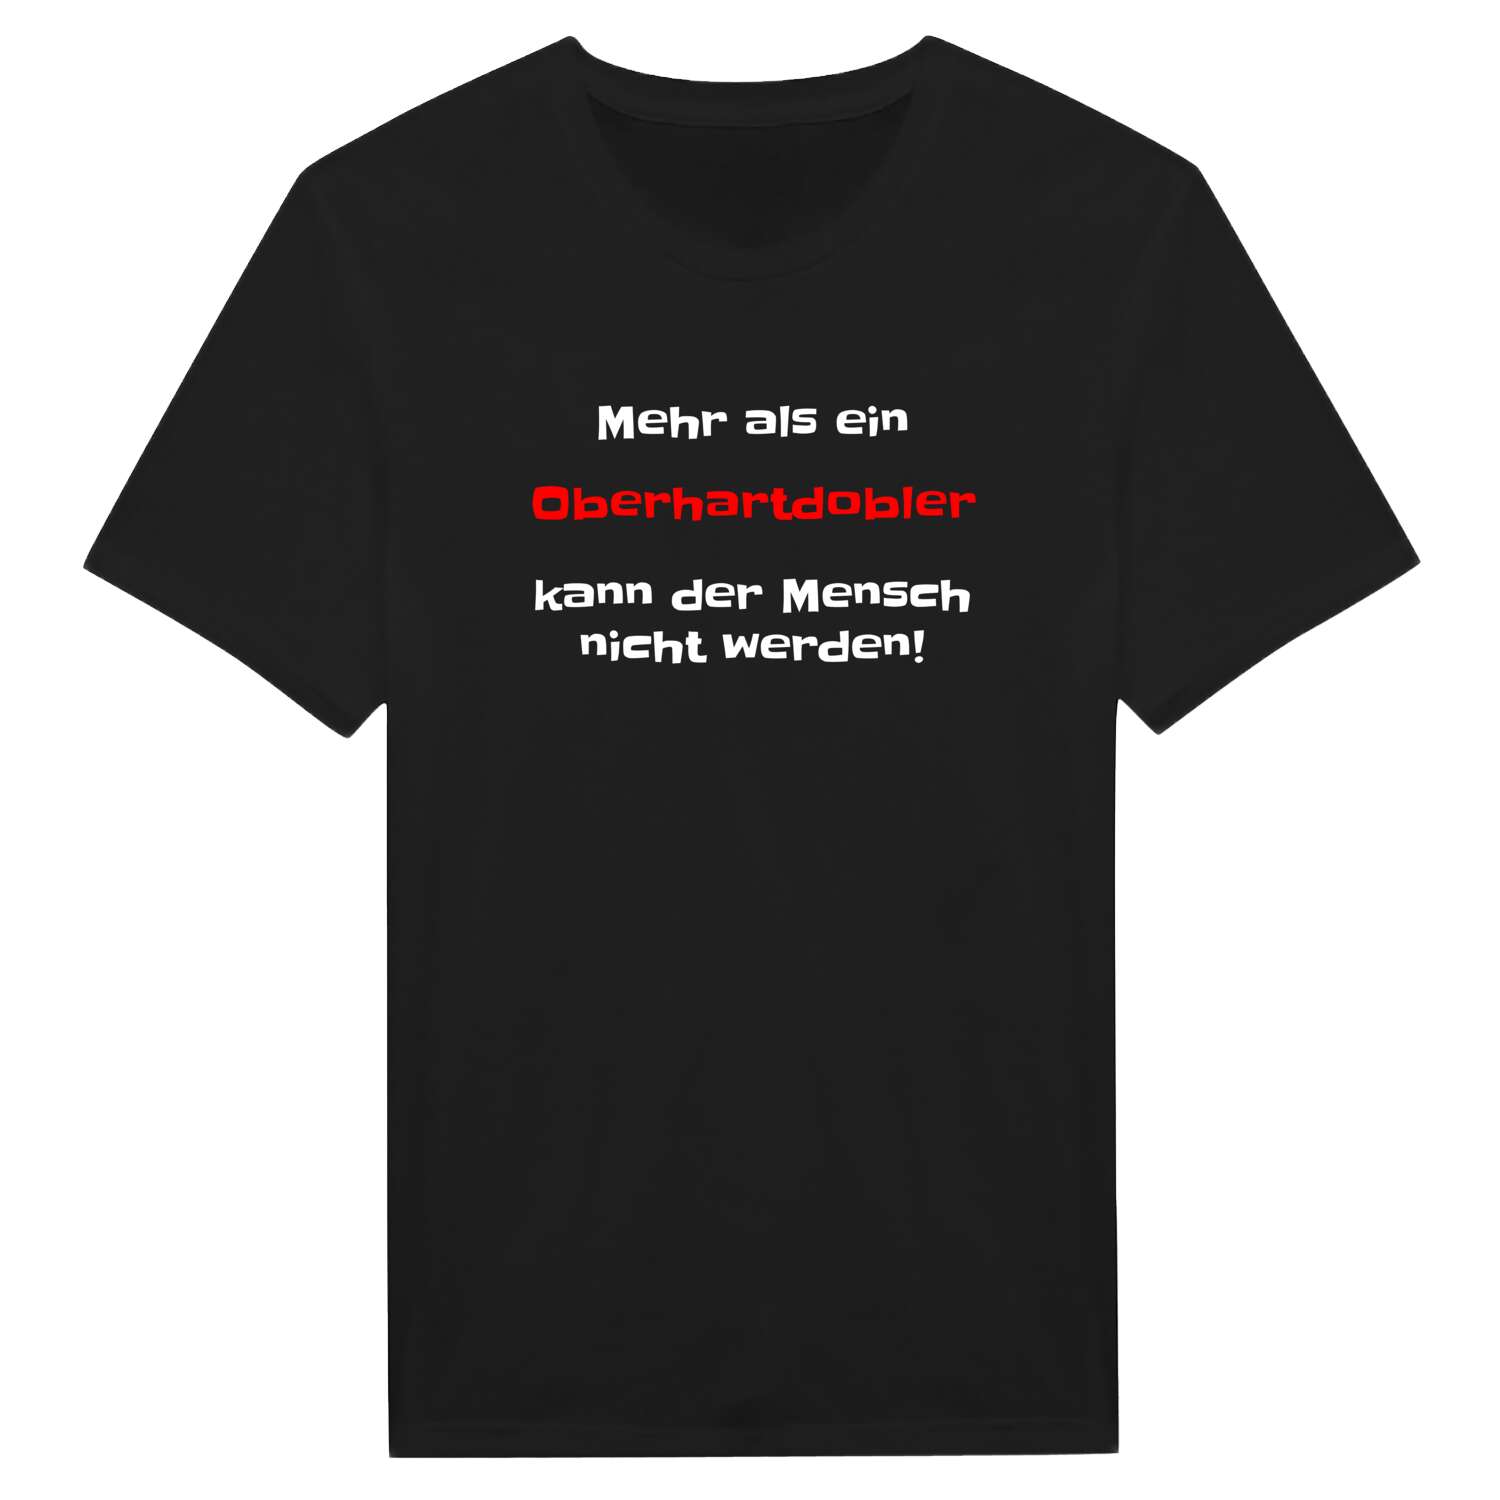 Oberhartdobl T-Shirt »Mehr als ein«